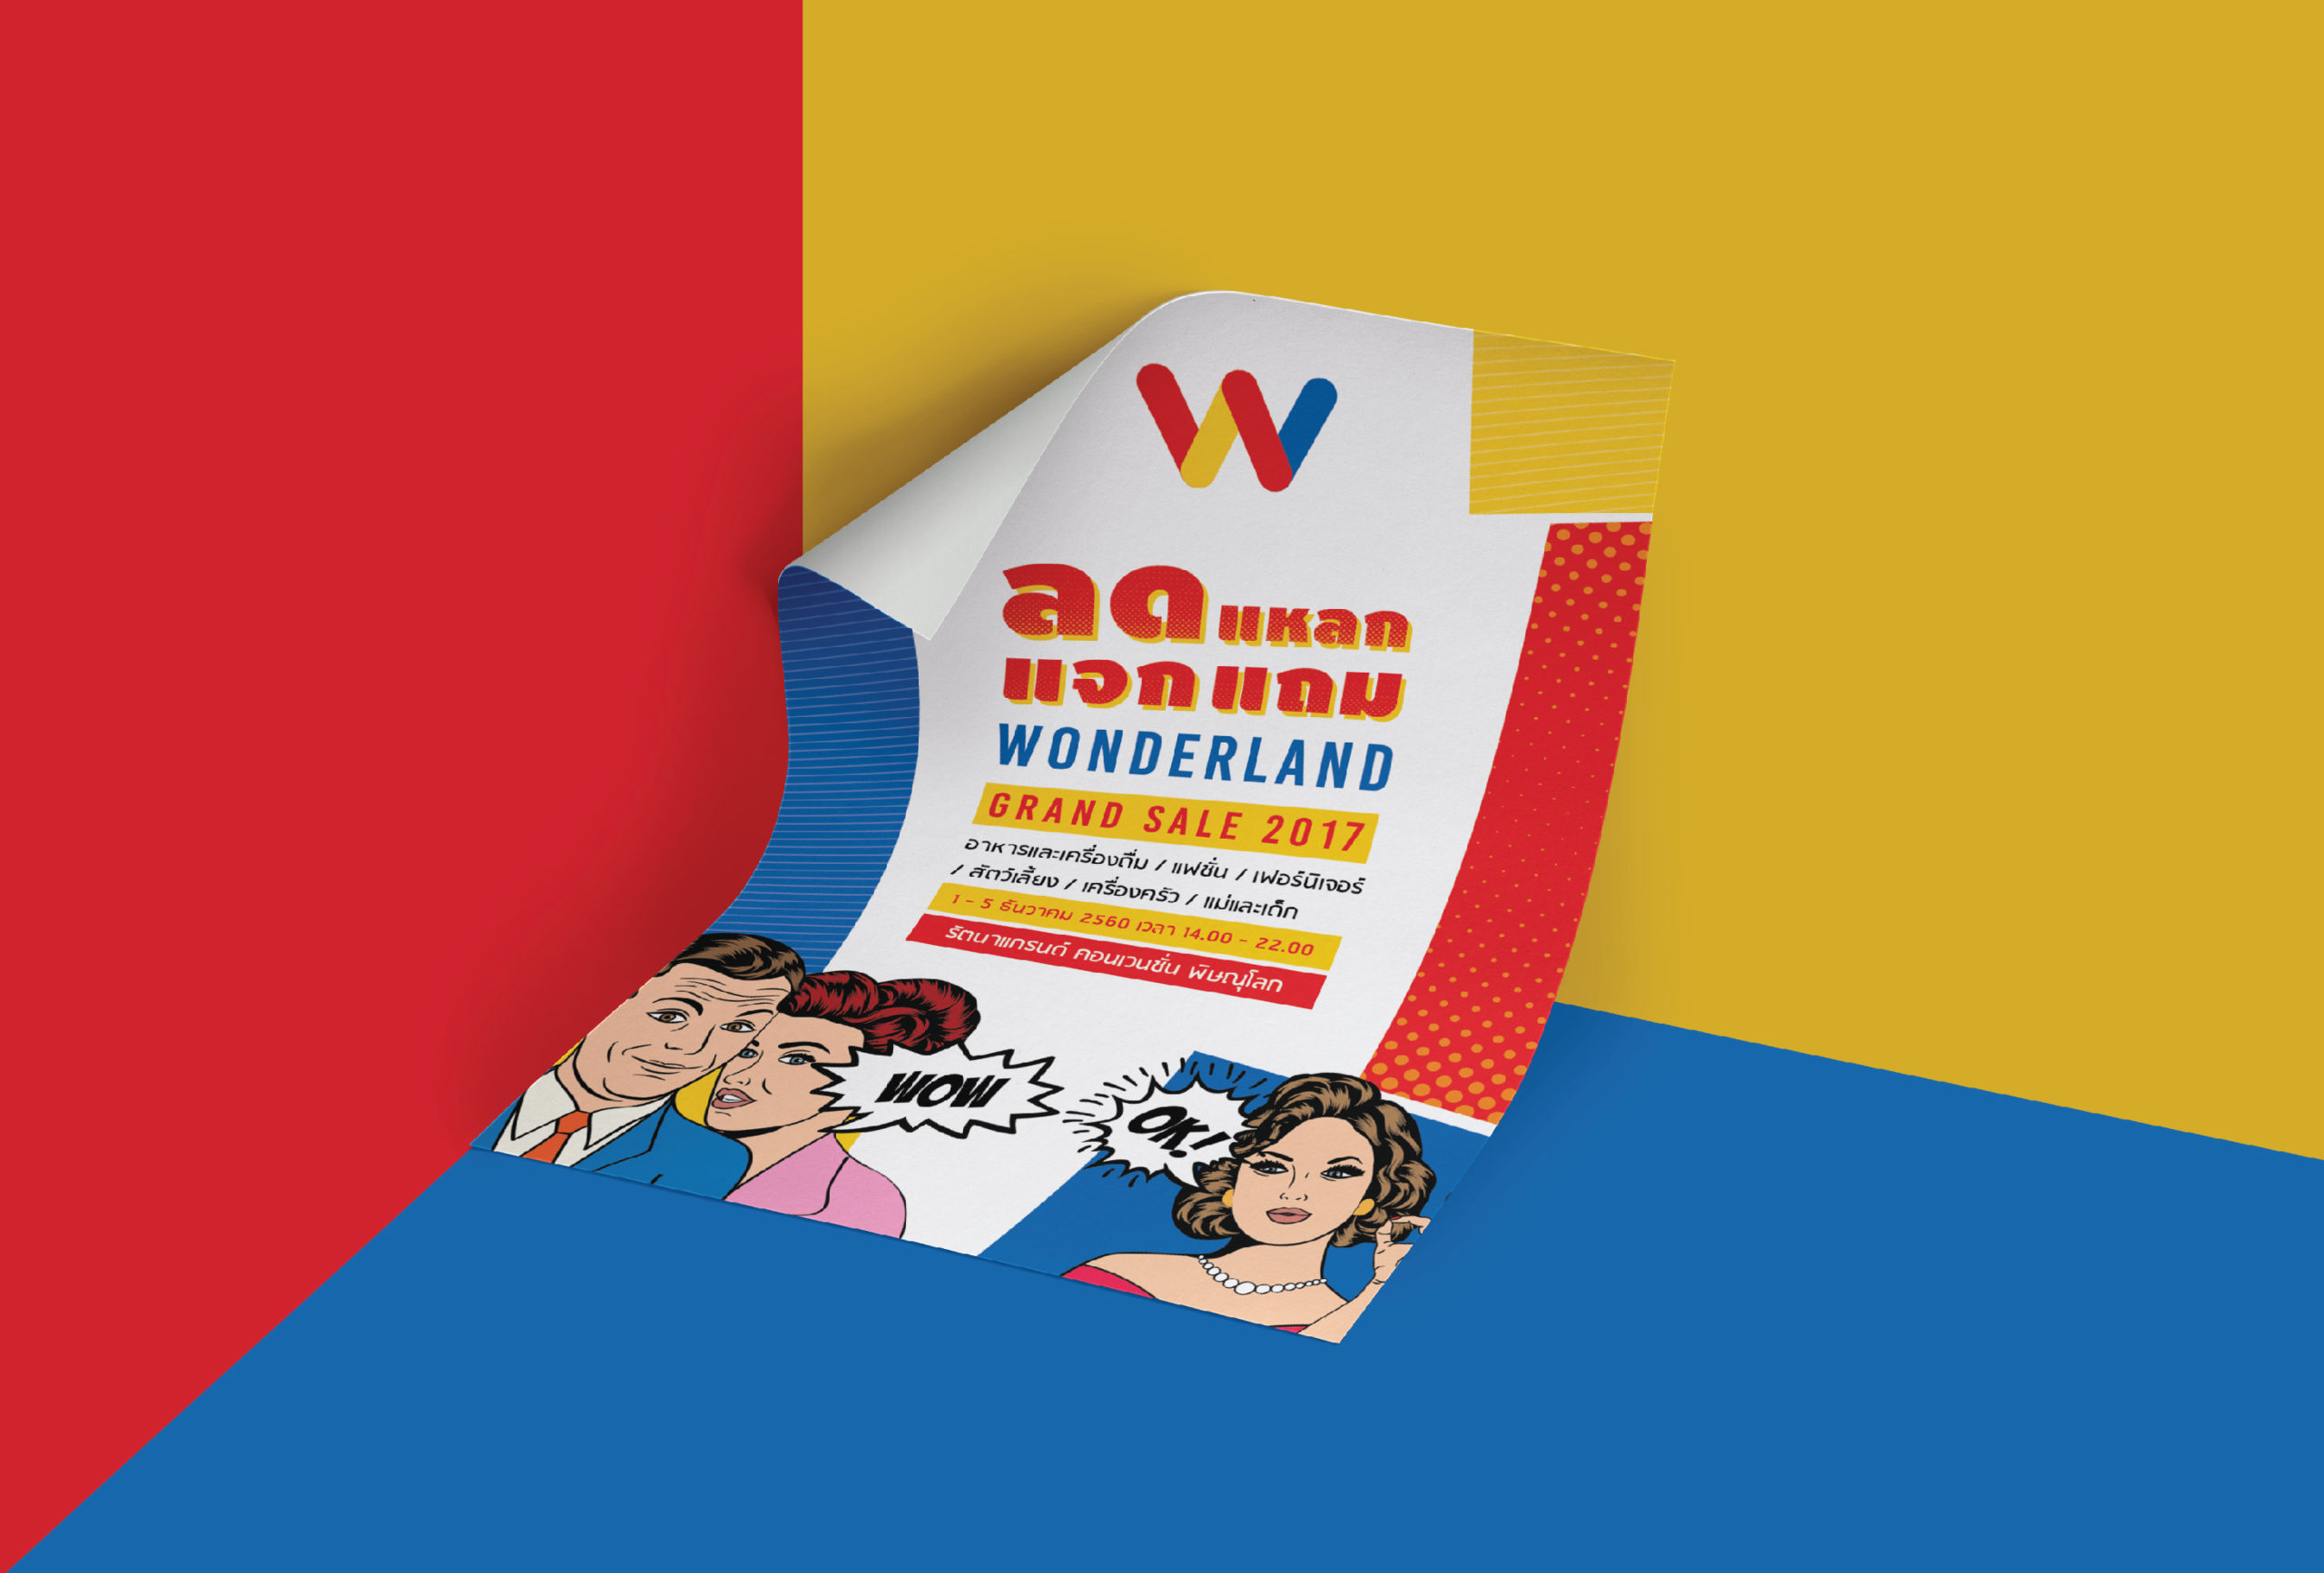 Wonderland Grand Sale 2017 _for web-09